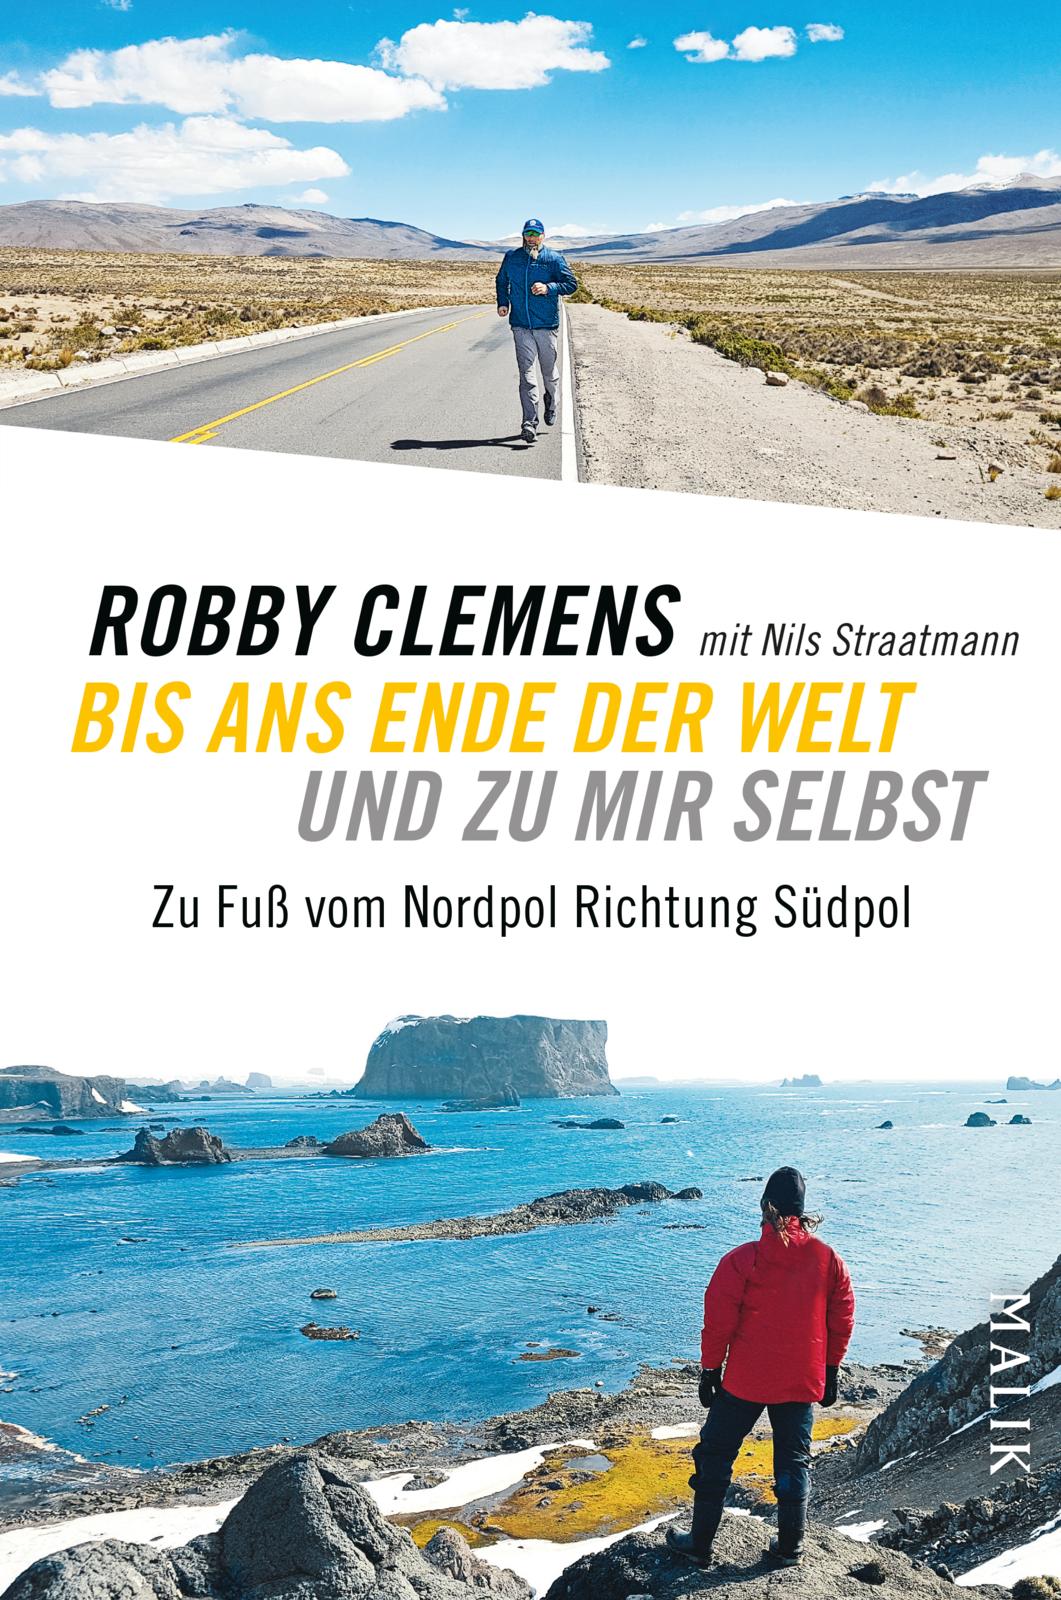 Buchcover “Bis ans Ende der Welt und zu mir selbst: Zu Fuß vom Nordpol Richtung Südpol” von Robby Clemens mit Nils Straatmann